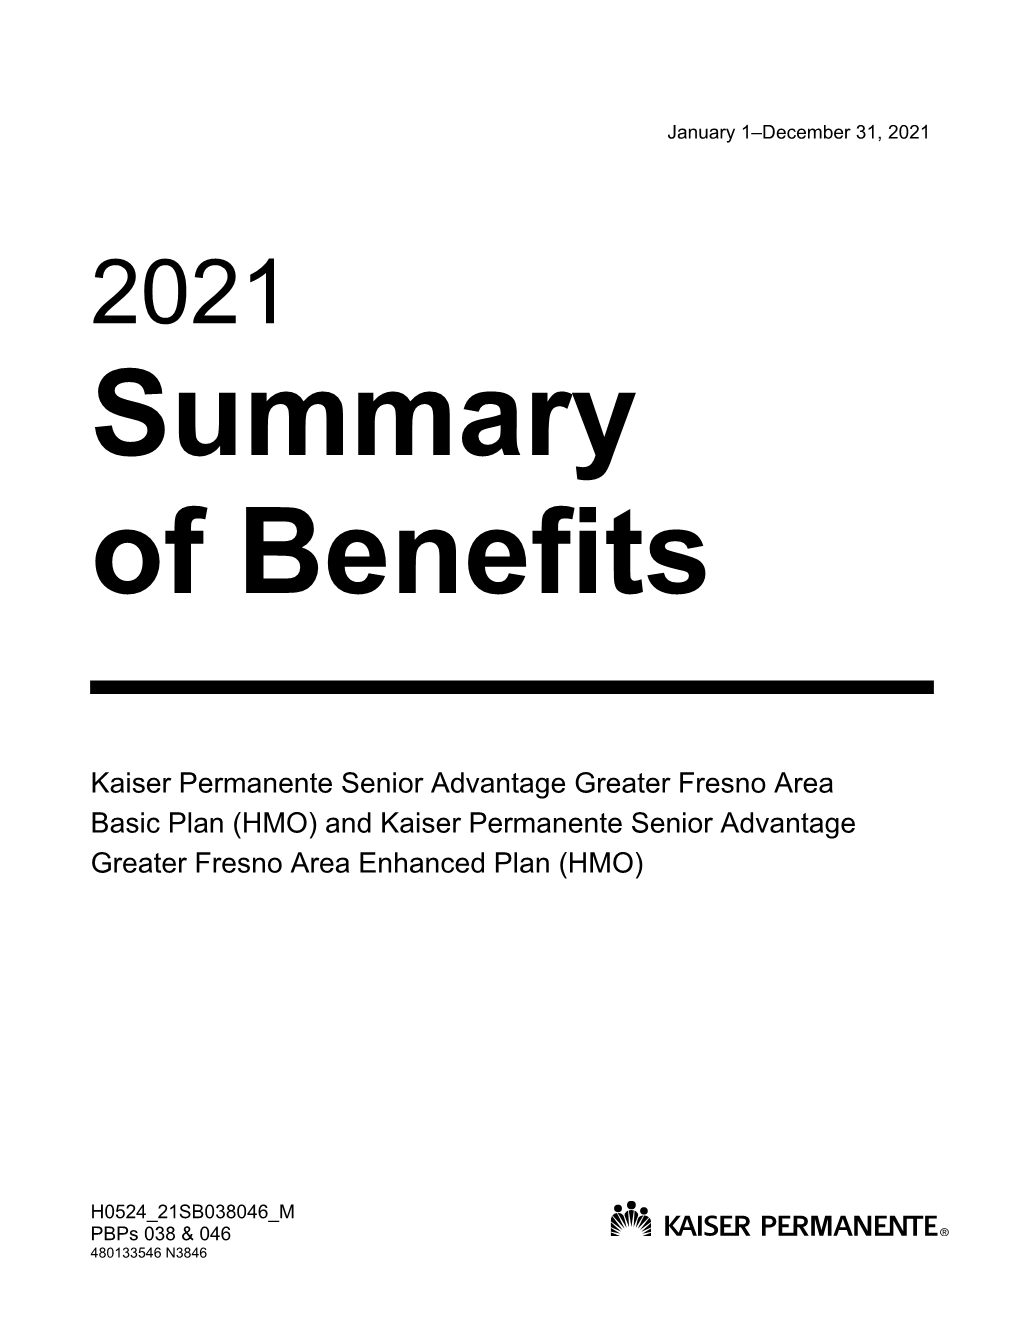 2021 Summary of Benefits